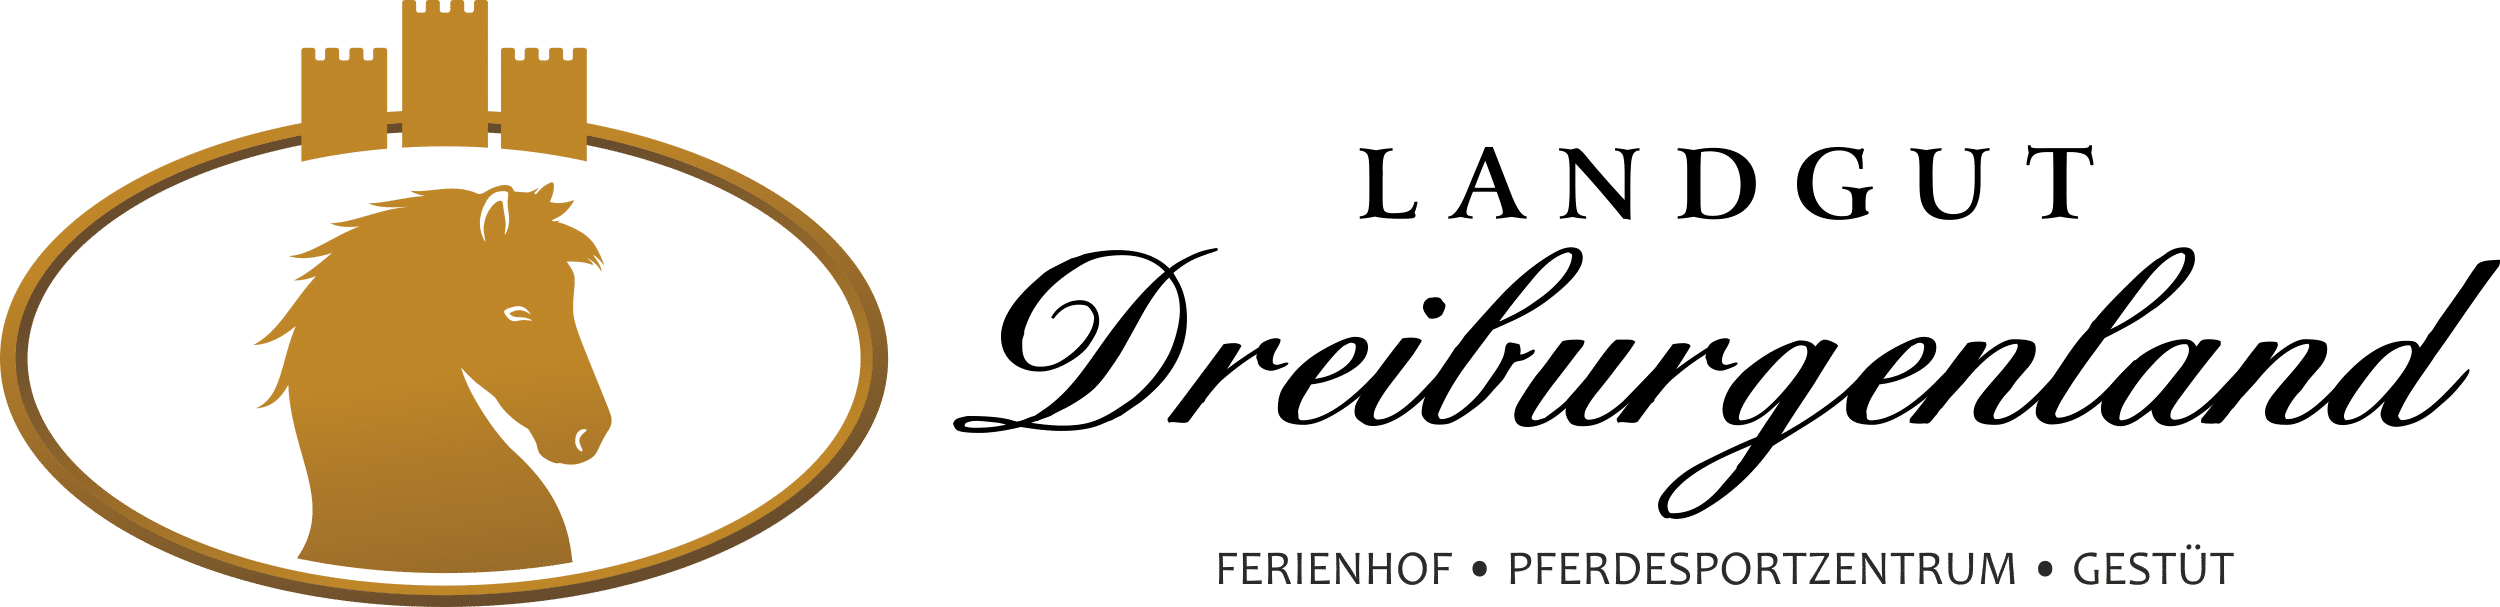 Ferienhof, Pferdesportzentrum und Gestüt "Landgut Dreiburgenland" | Impressum - Landgut-Dreiburgenland